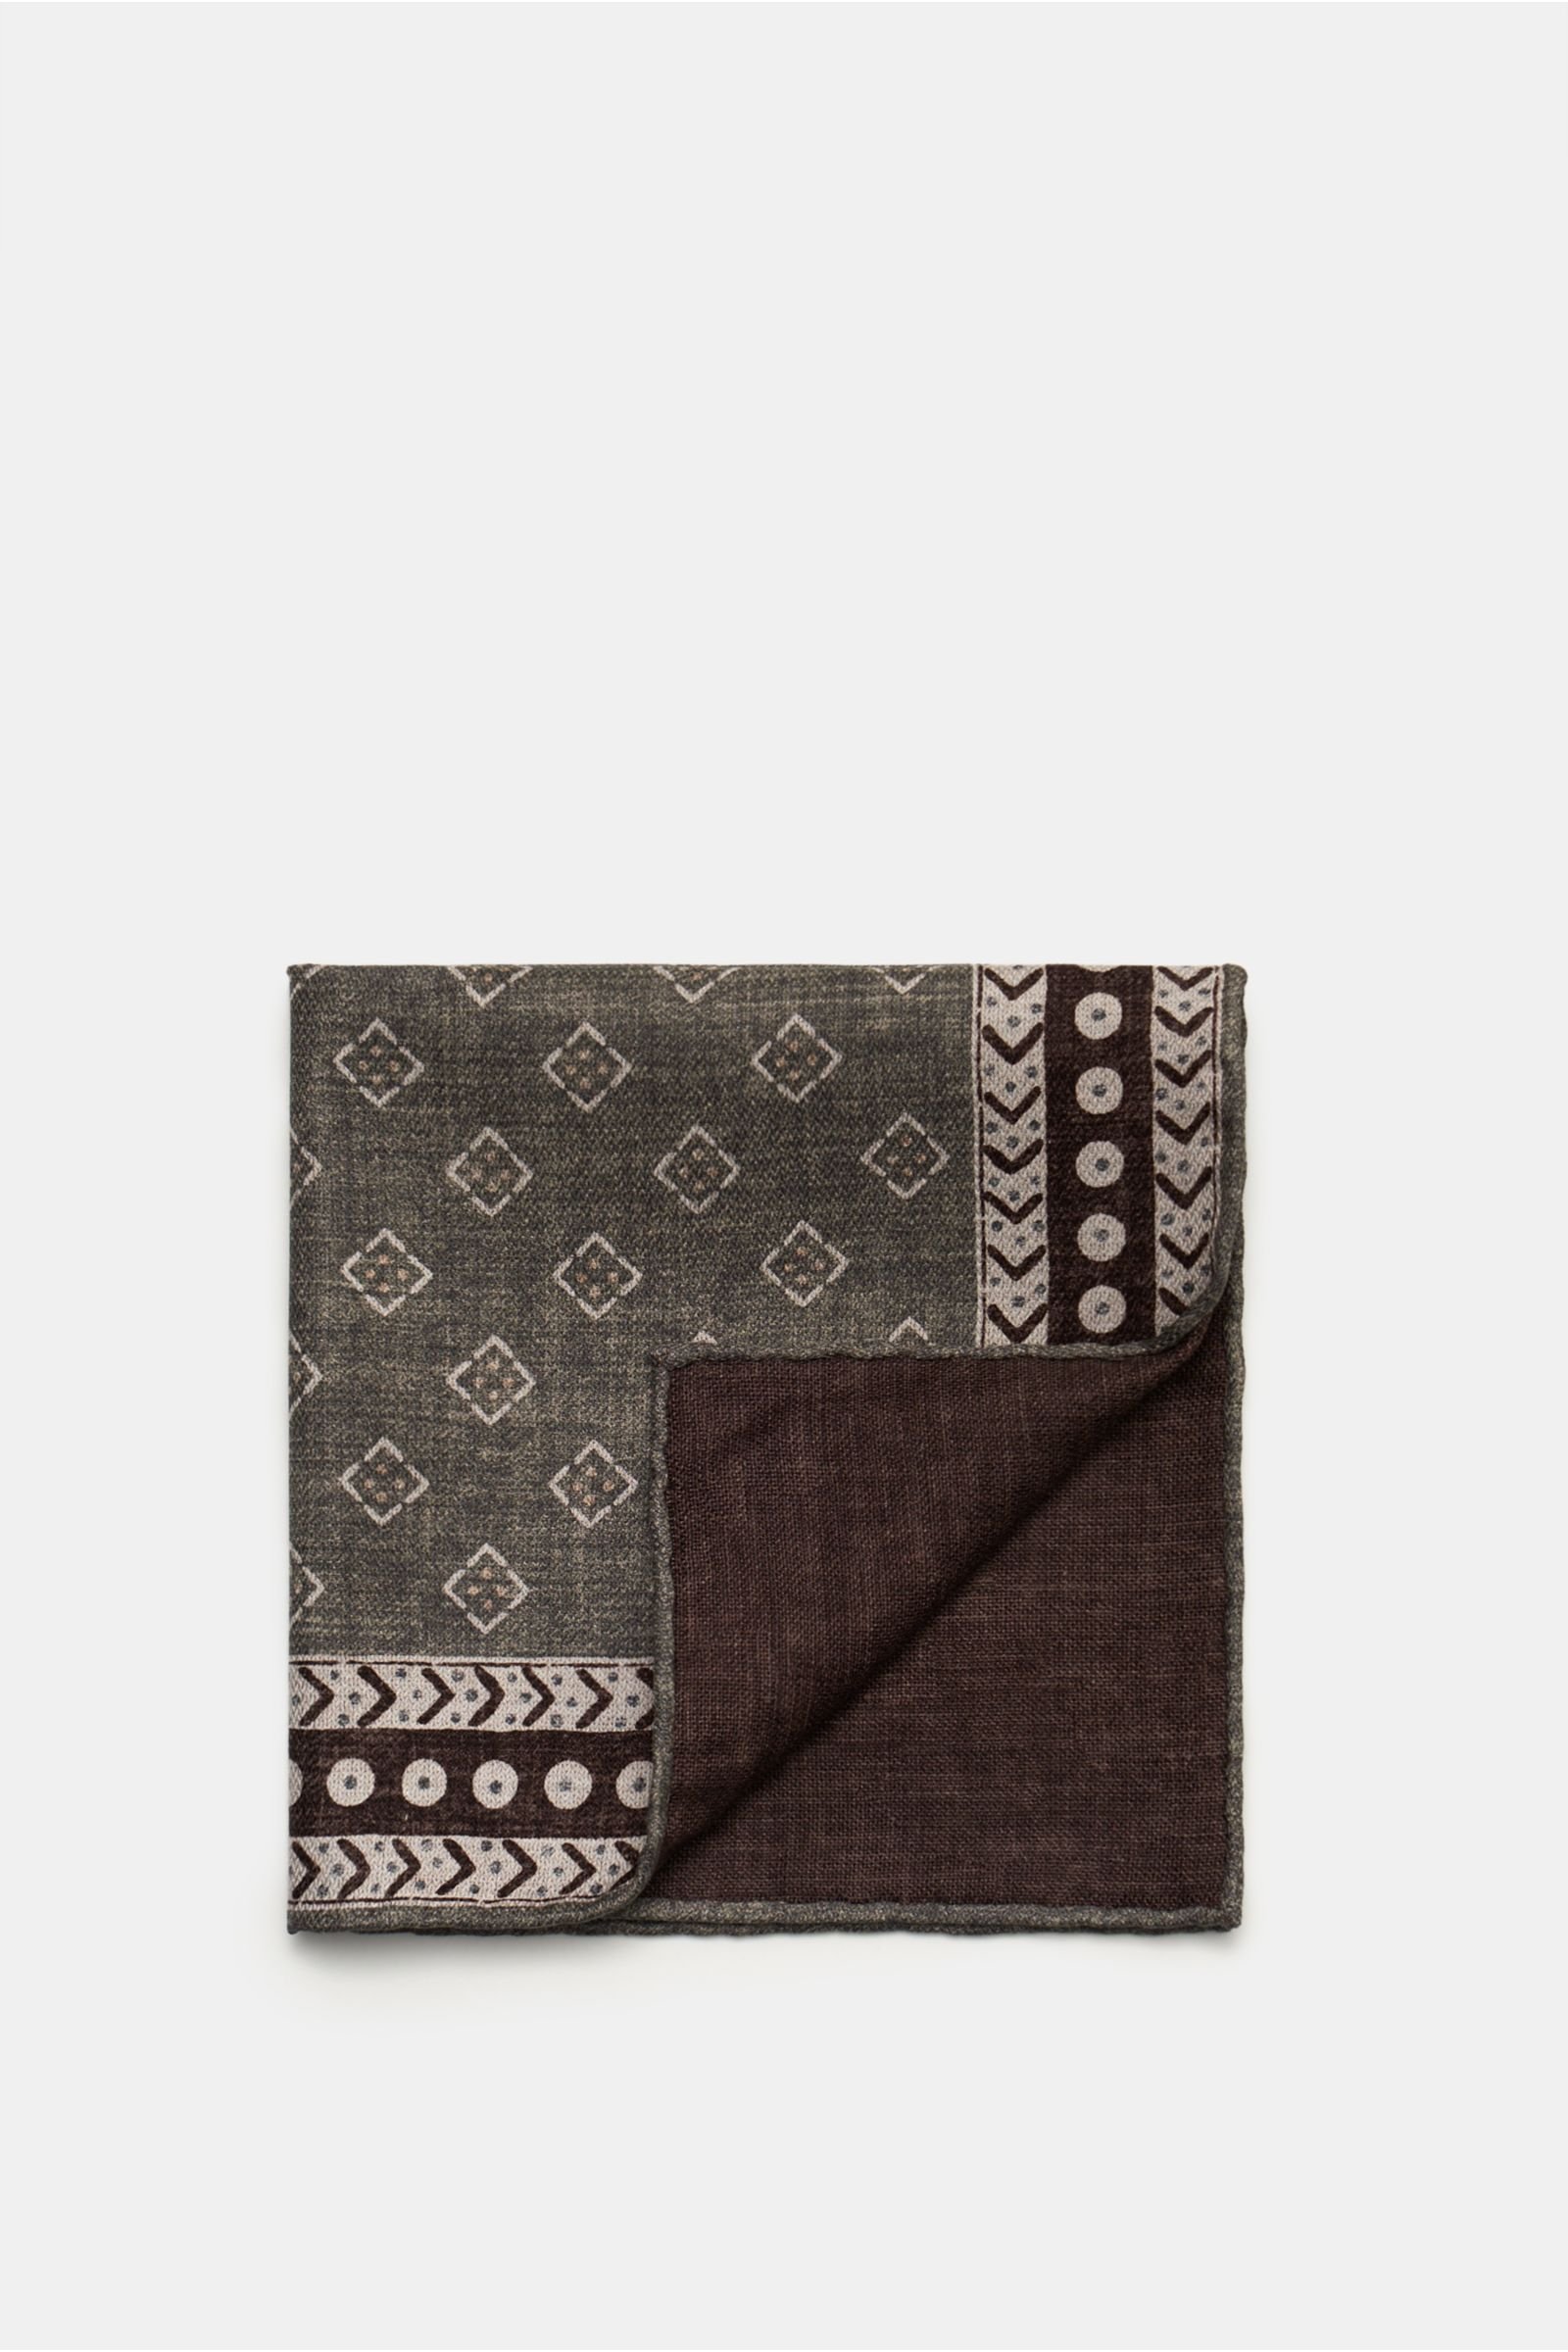 Pocket square grey/dark brown patterned